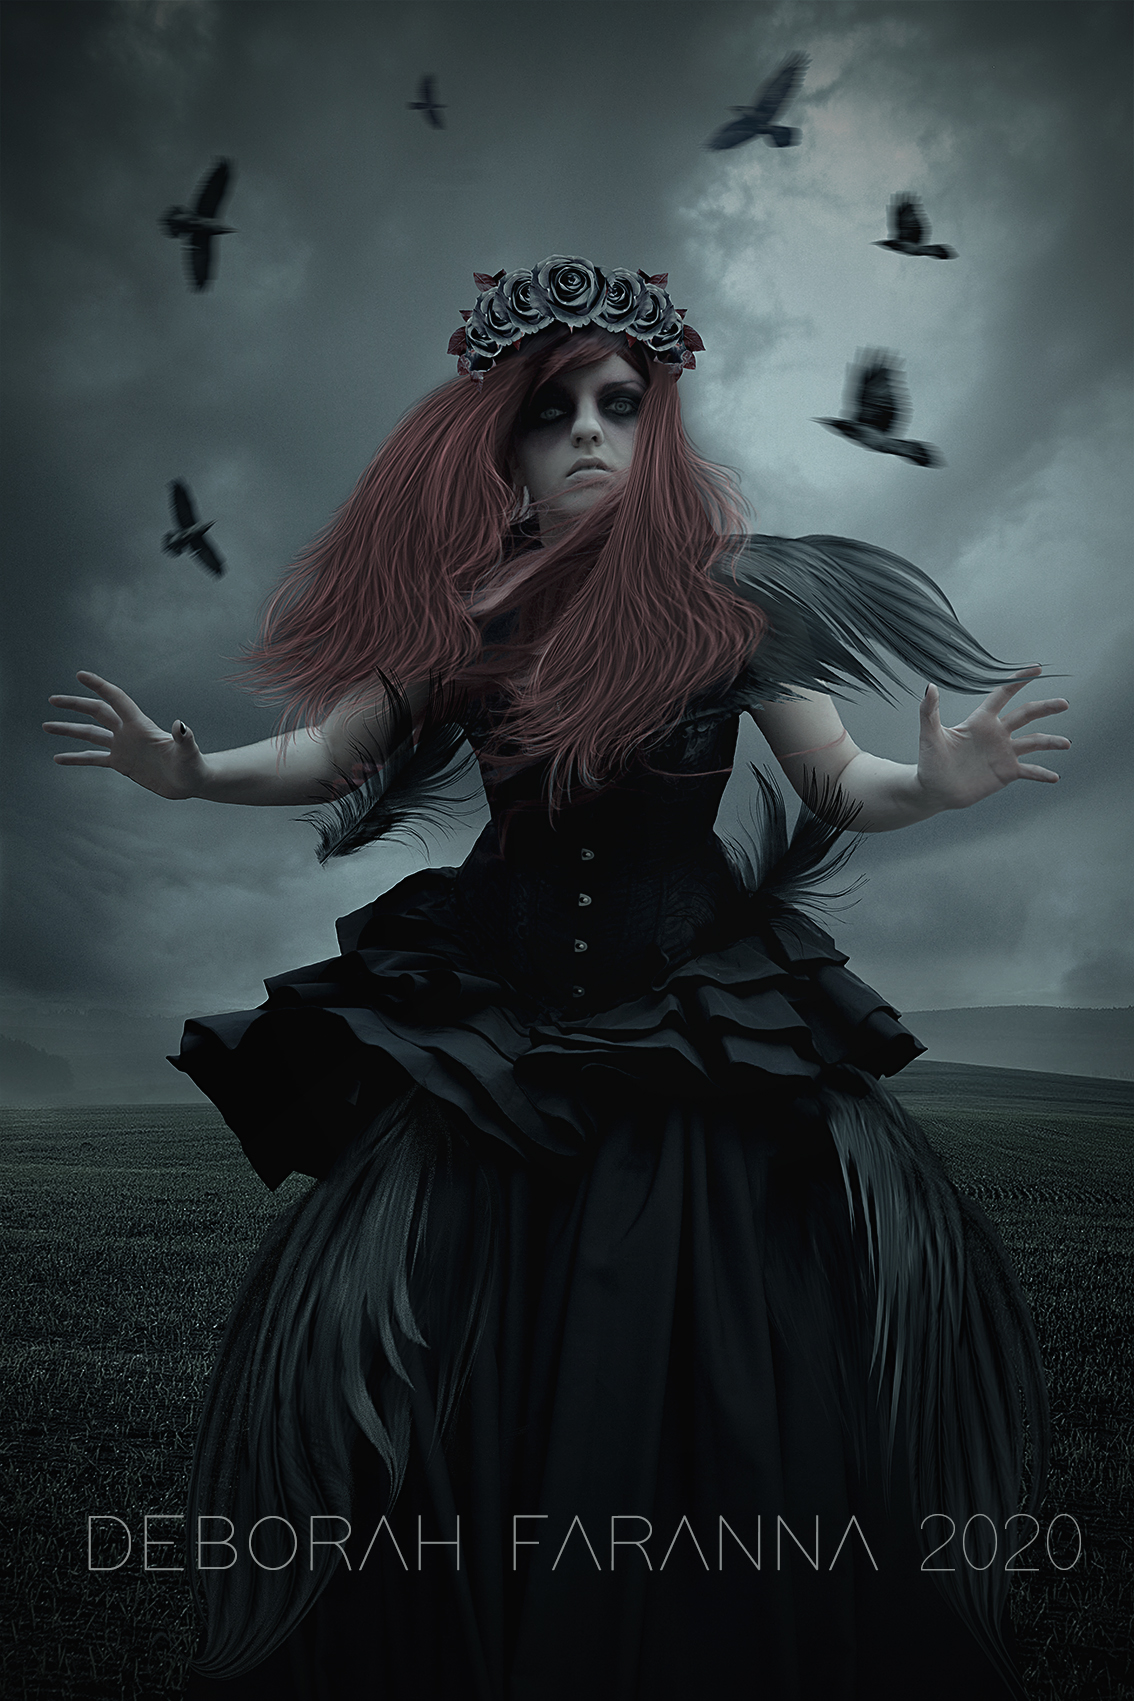 Lady Crow